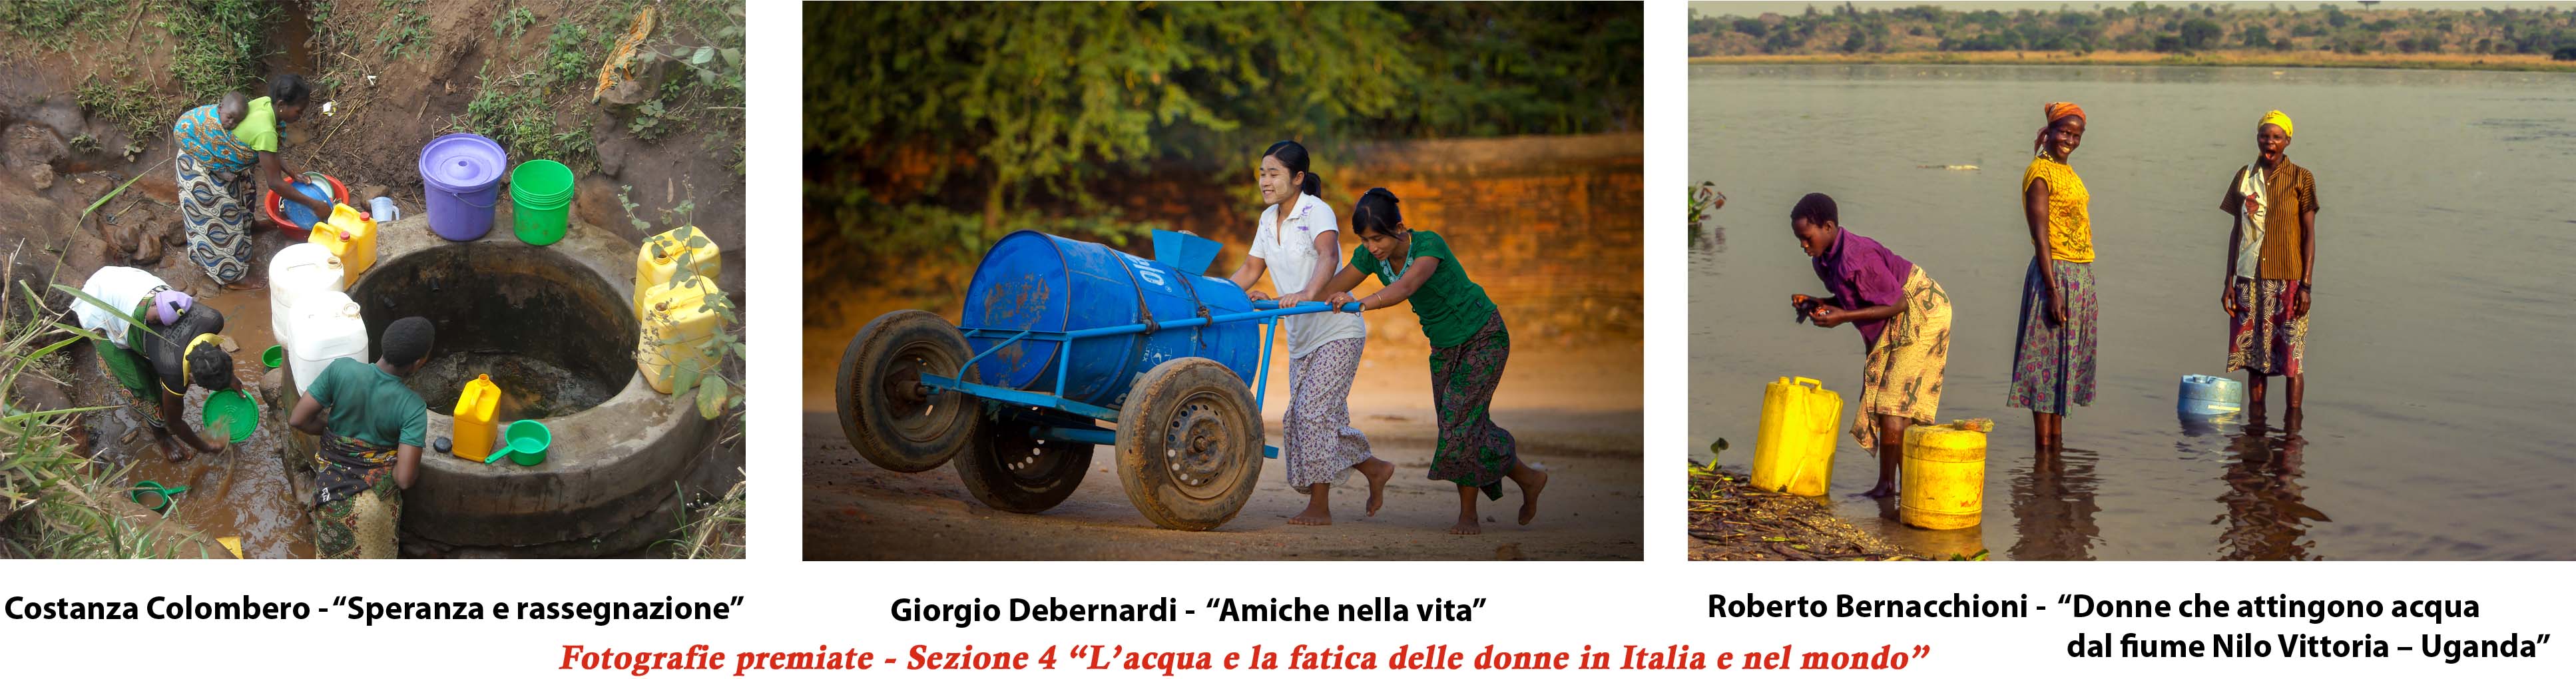 Fotografie premiate nella Sezione 4 “L’acqua e la fatica delle donne in Italia e nel mondo”